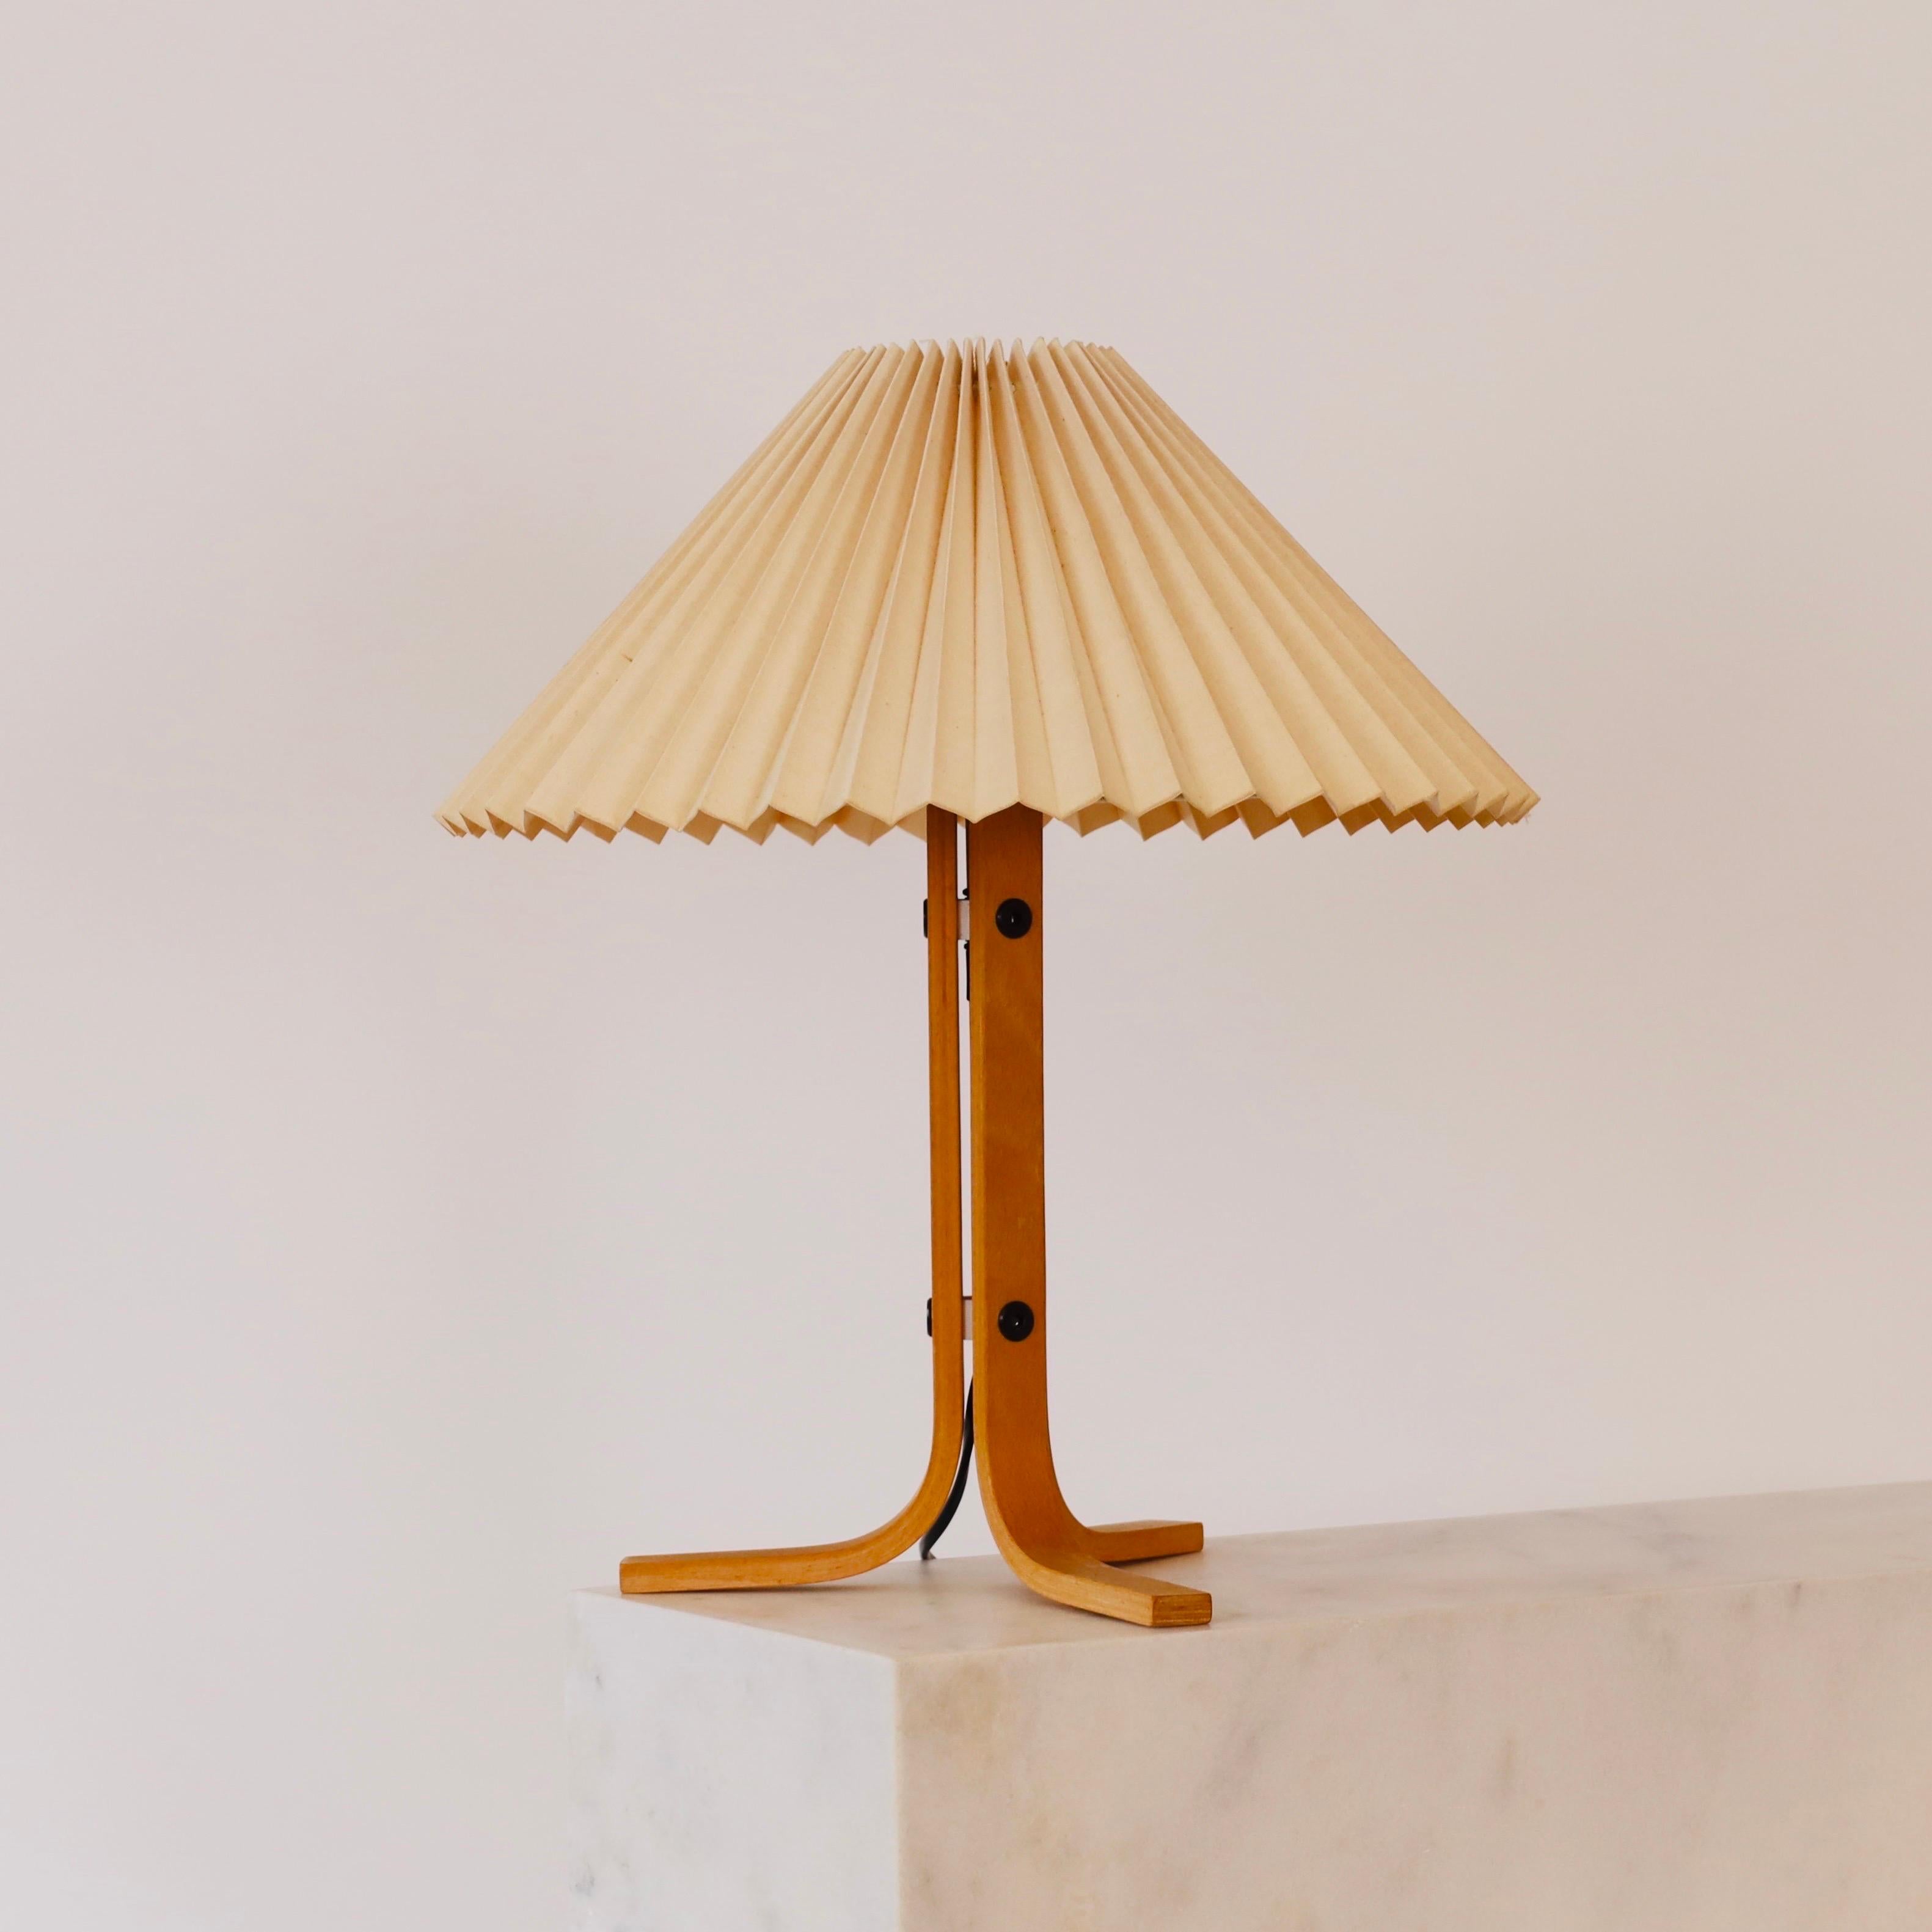 Lampe de bureau tripode en bois de Beeche, conçue par Mads Caprani dans les années 1970 pour Caprani Light. Une rareté pour une belle maison.

* A  lampe de bureau tripode en placage de hêtre courbé avec un abat-jour en tissu plissé beige clair
*